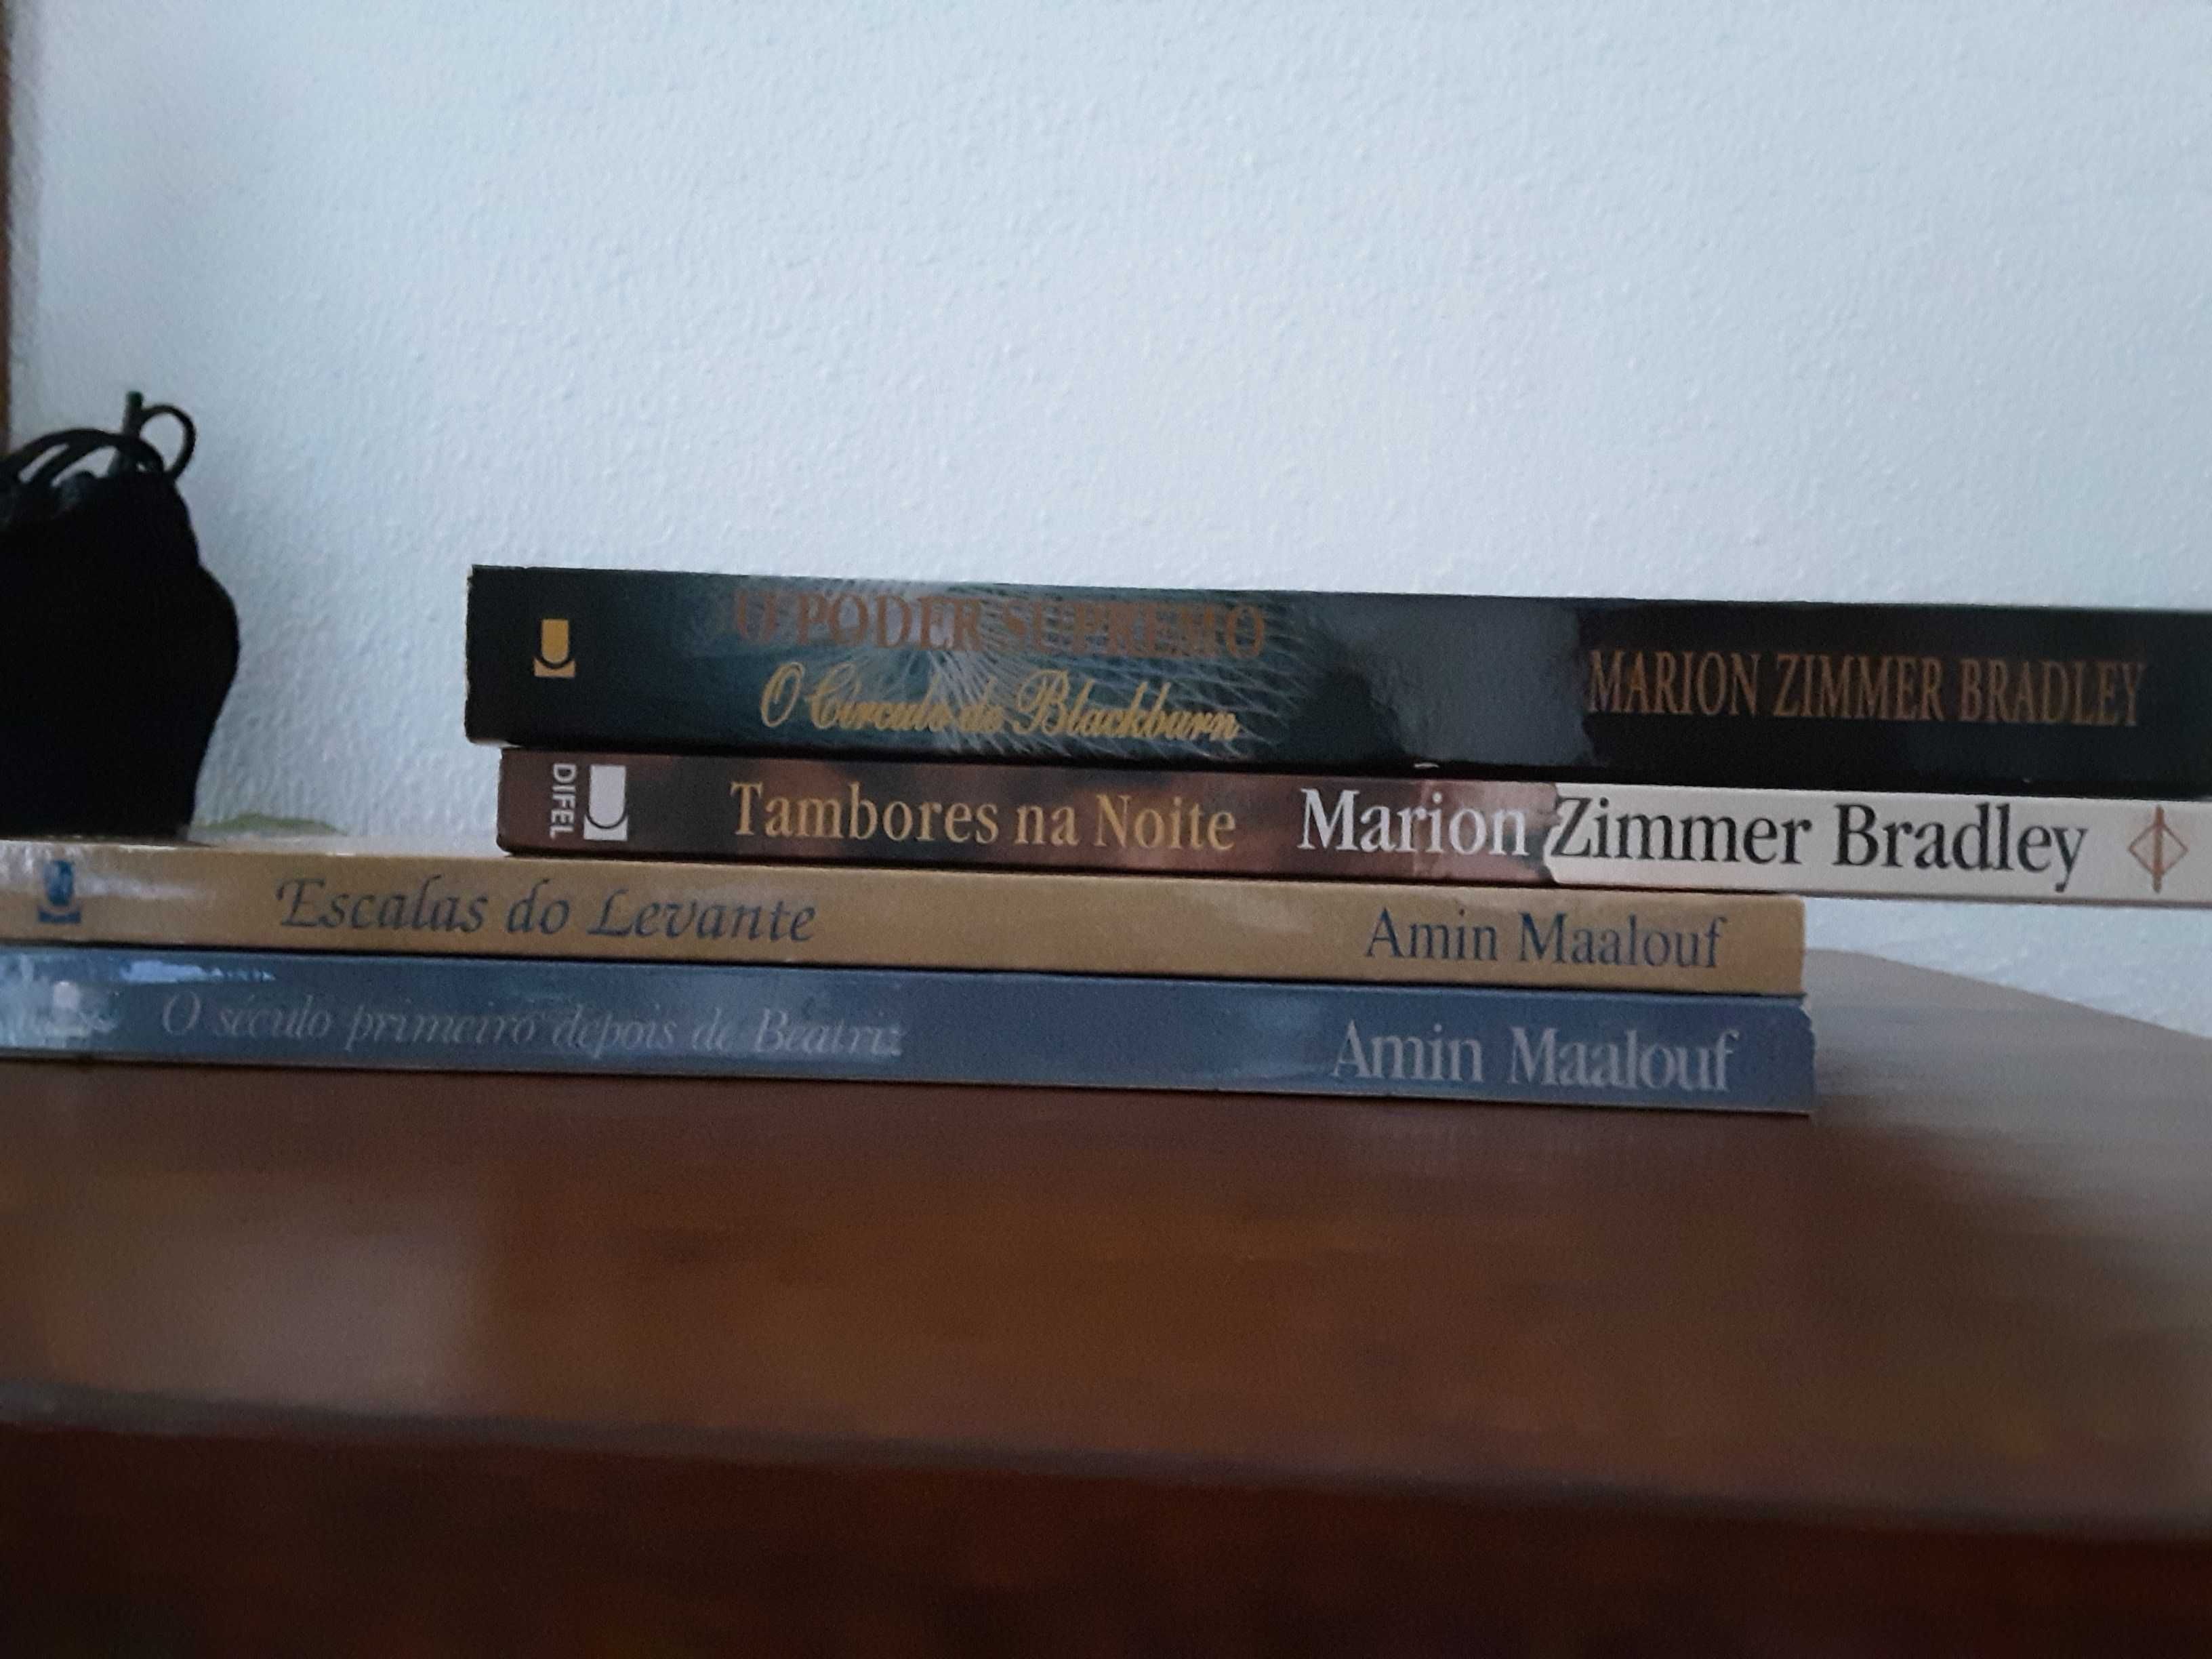 Livros de Marion Zimmer Bradley e Amin Maalouf